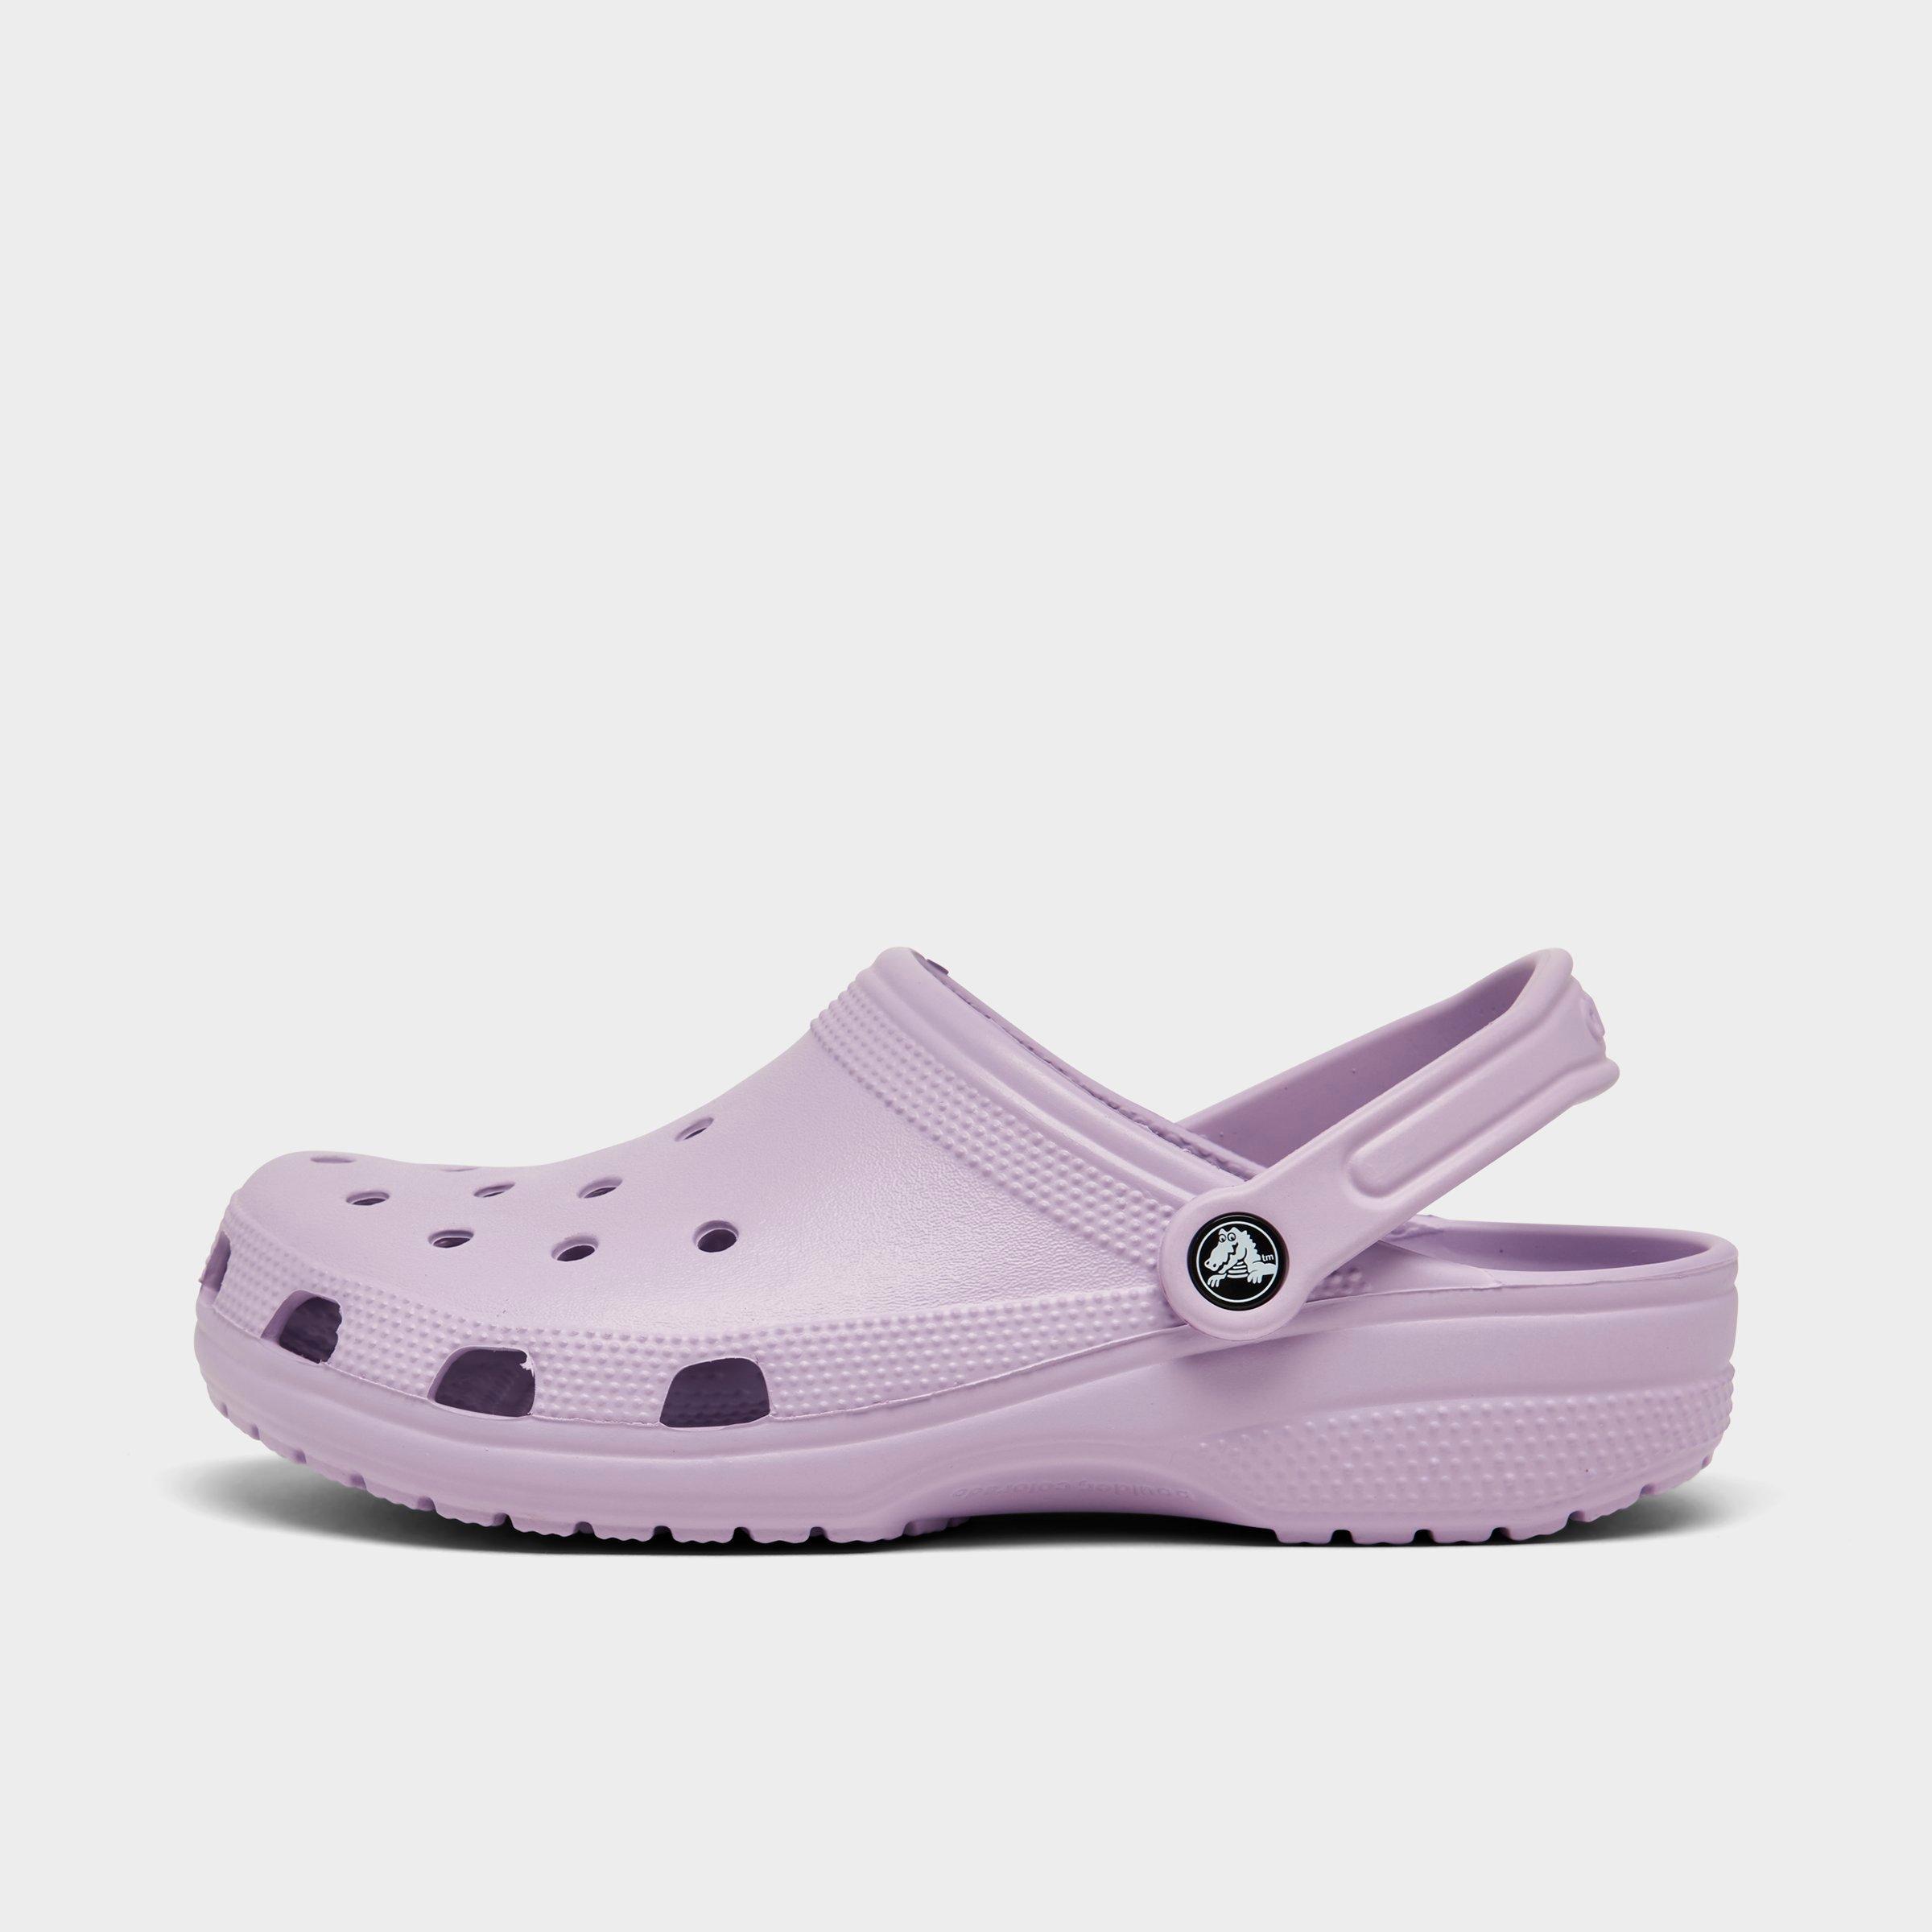 Crocs Classic Clog Shoes| Finish Line